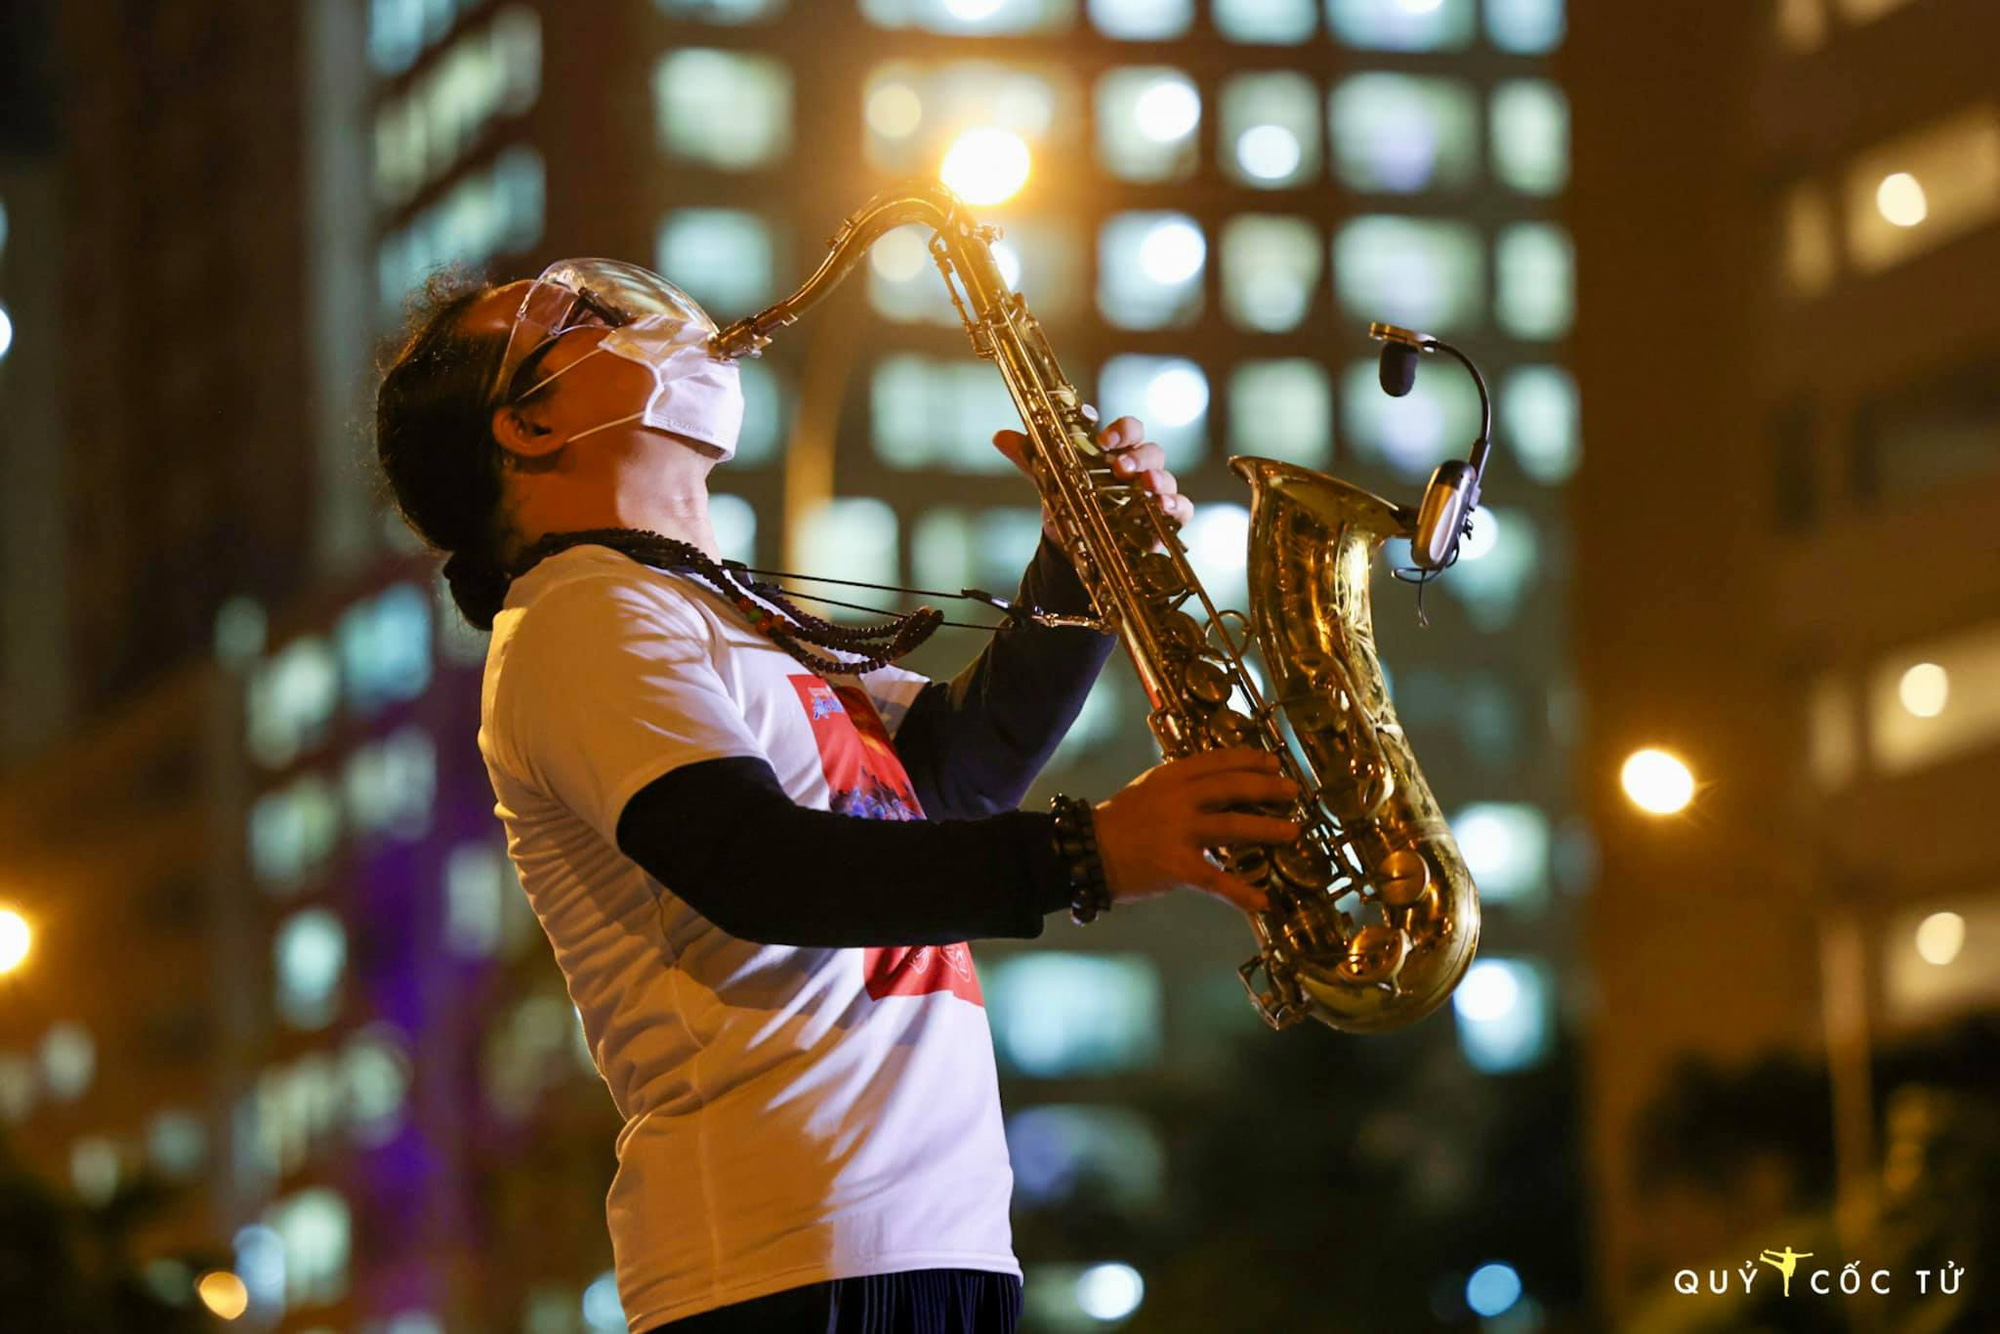 MC Nguyên Khang trải lòng về buổi diễn saxophone của Trần Mạnh Tuấn tại bệnh viện dã chiến